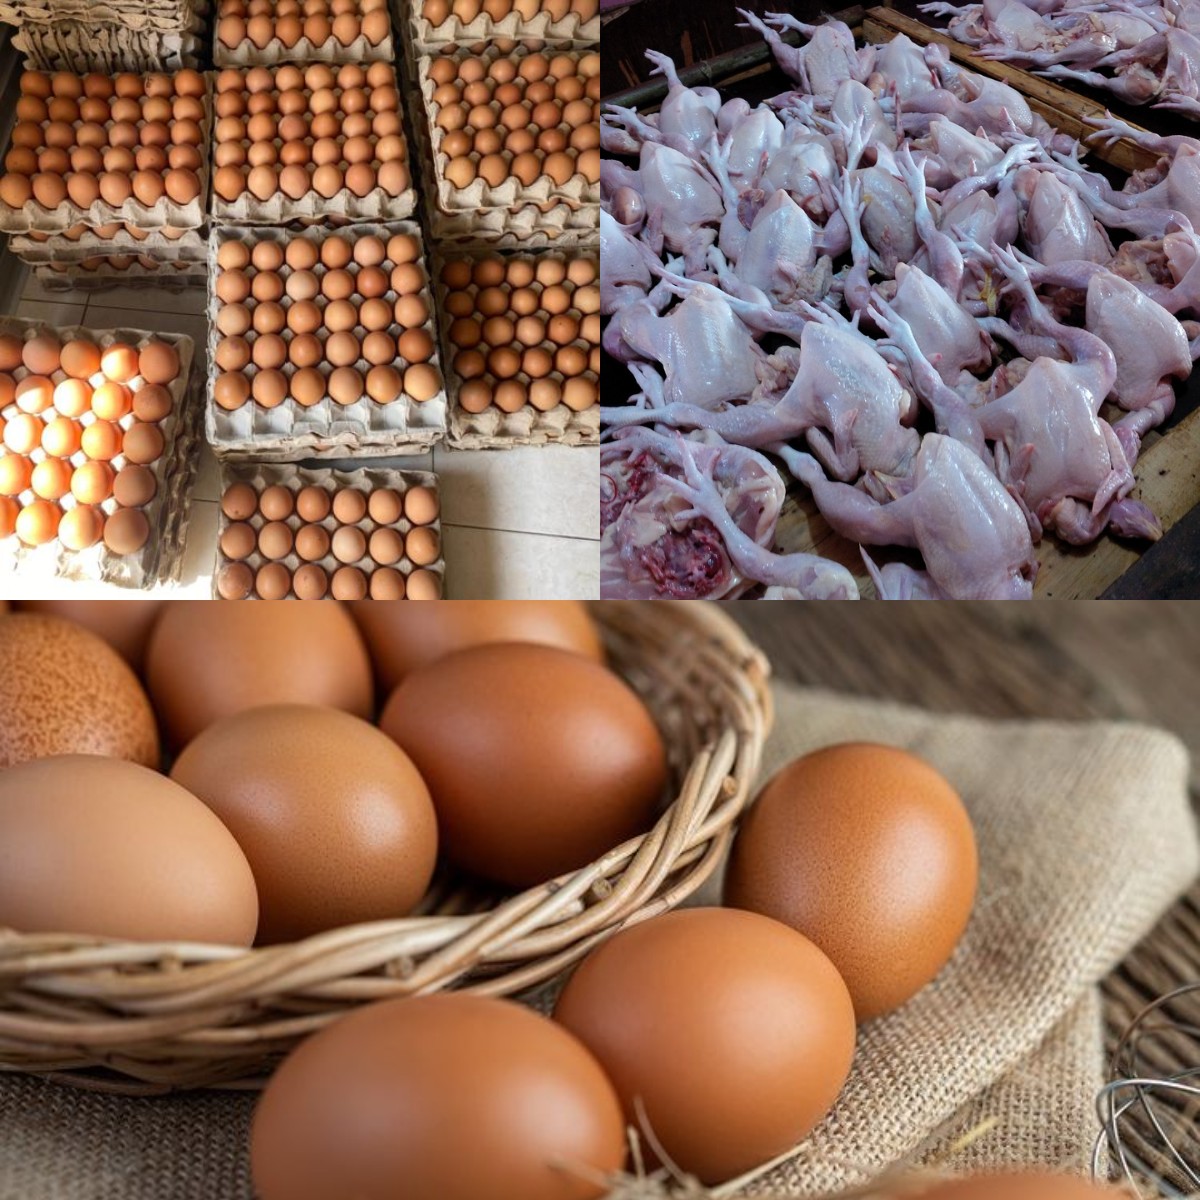 Harga Telur dan Daging Ayam Melonjak Jelang Ramadan, Pola Tahunan atau Akibat Ketidakseimbangan Infrastruktur?